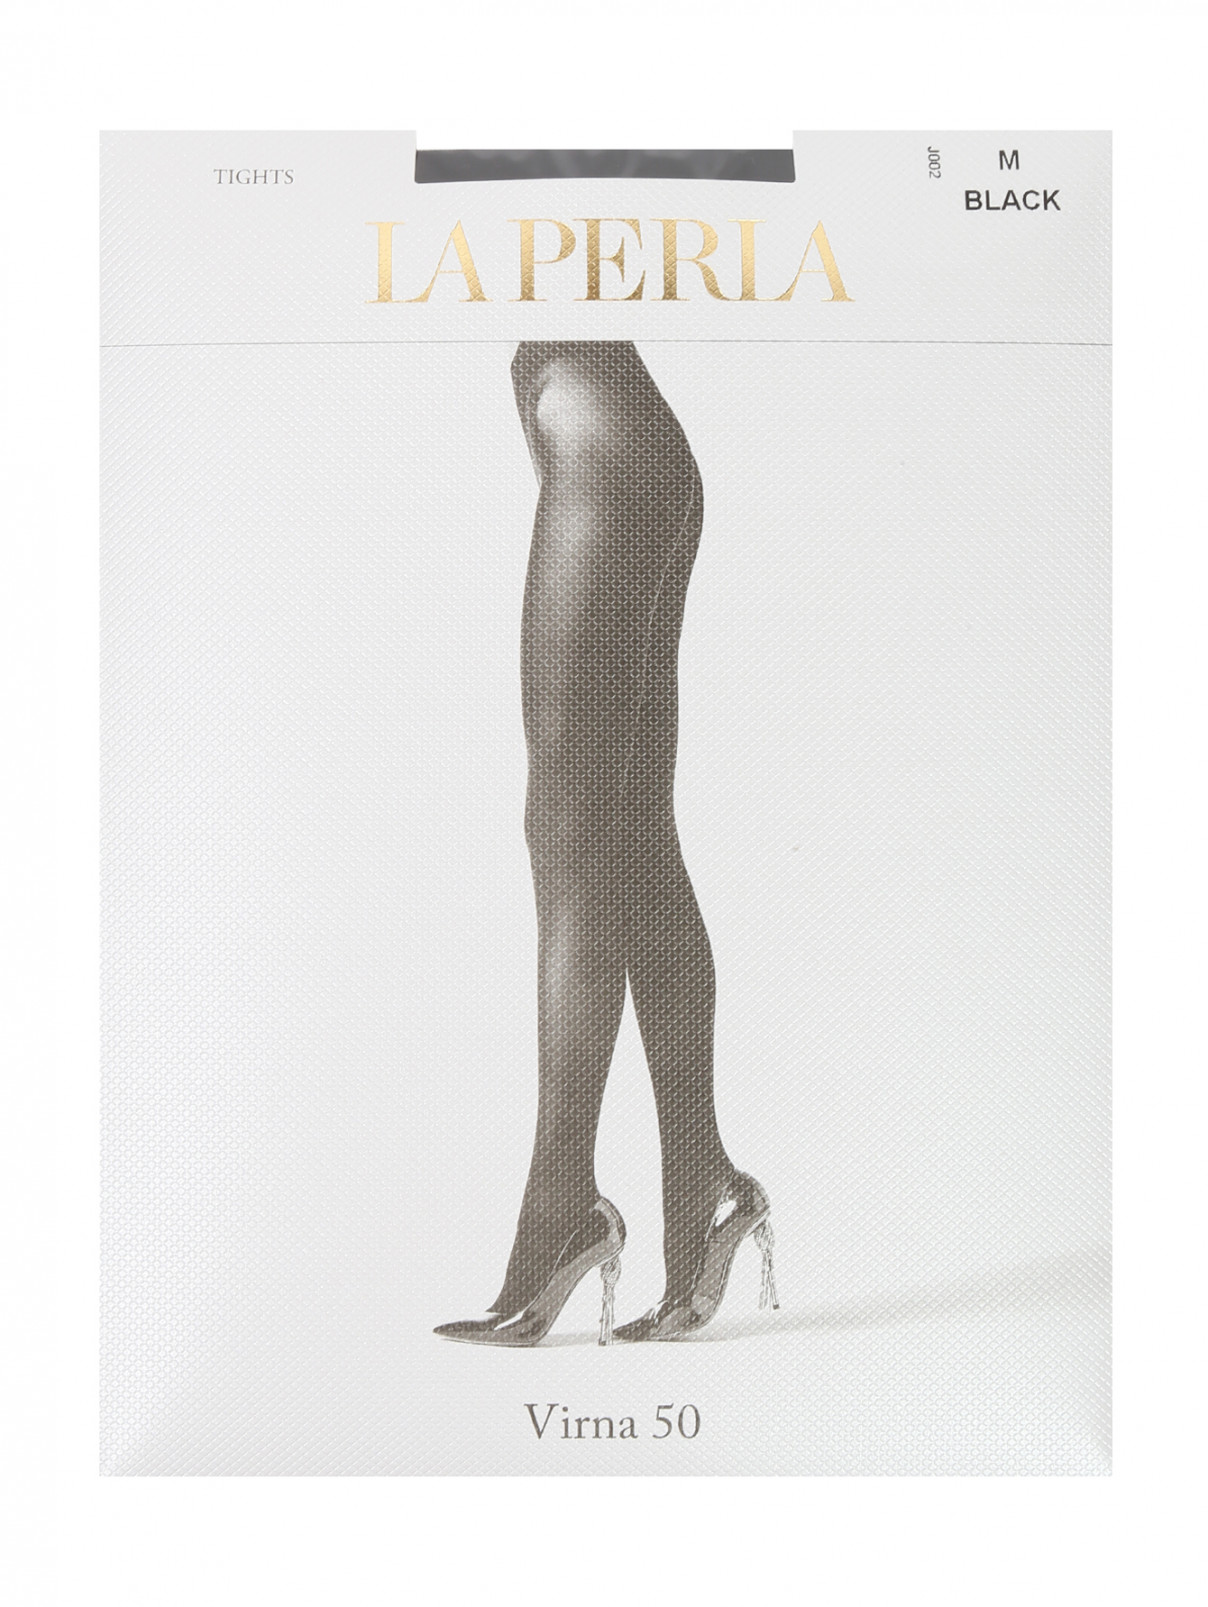 Однотонные колготки 50 Den La Perla  –  Общий вид  – Цвет:  Черный